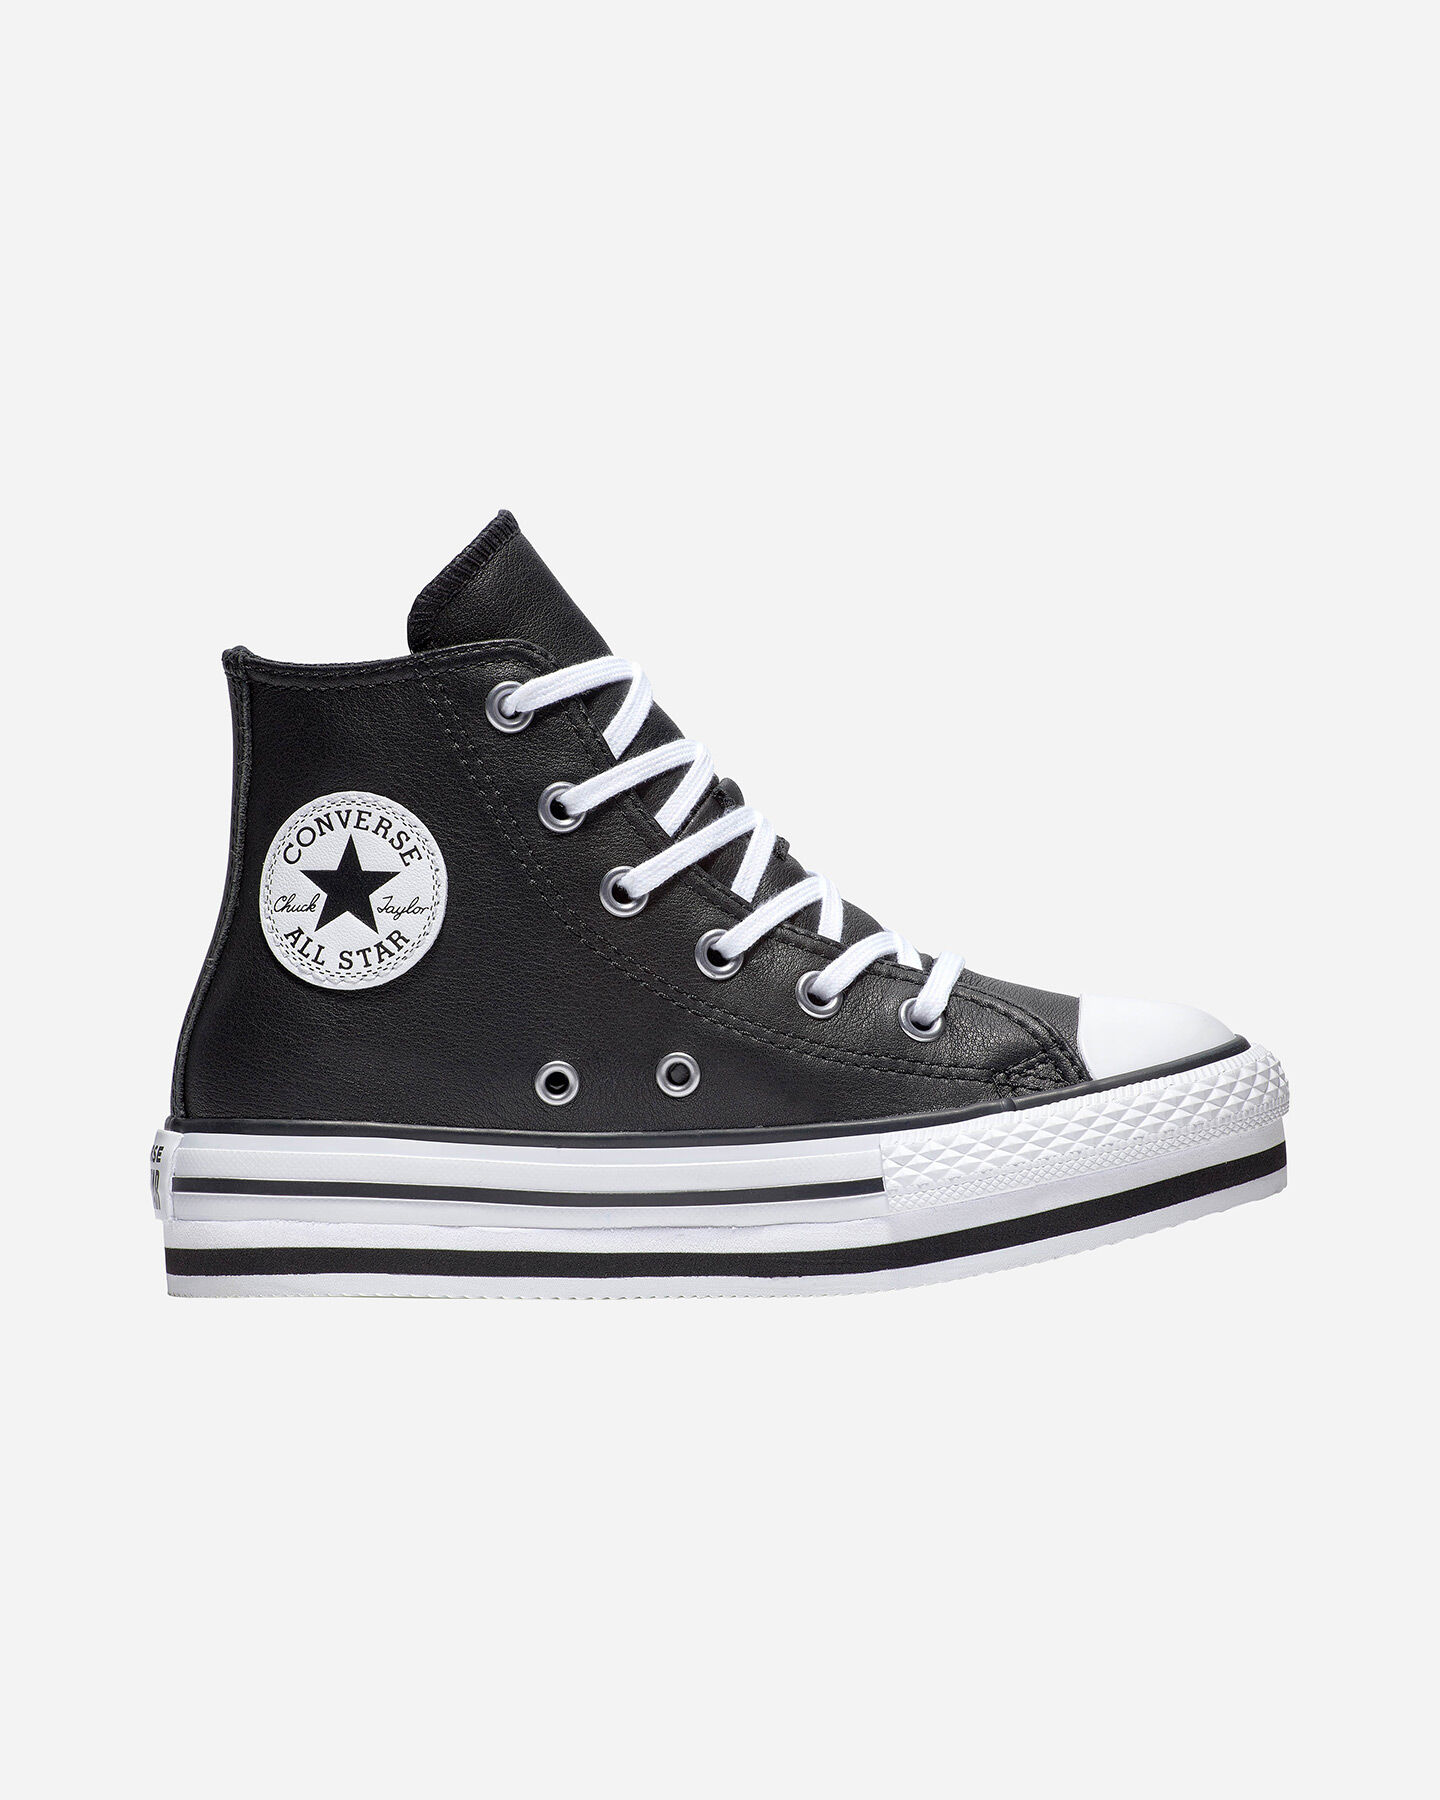  Scarpe sneakers CONVERSE CHUCK TAYLOR ALL STAR EVA LIFT HI JR S4094526|1|4 scatto 0